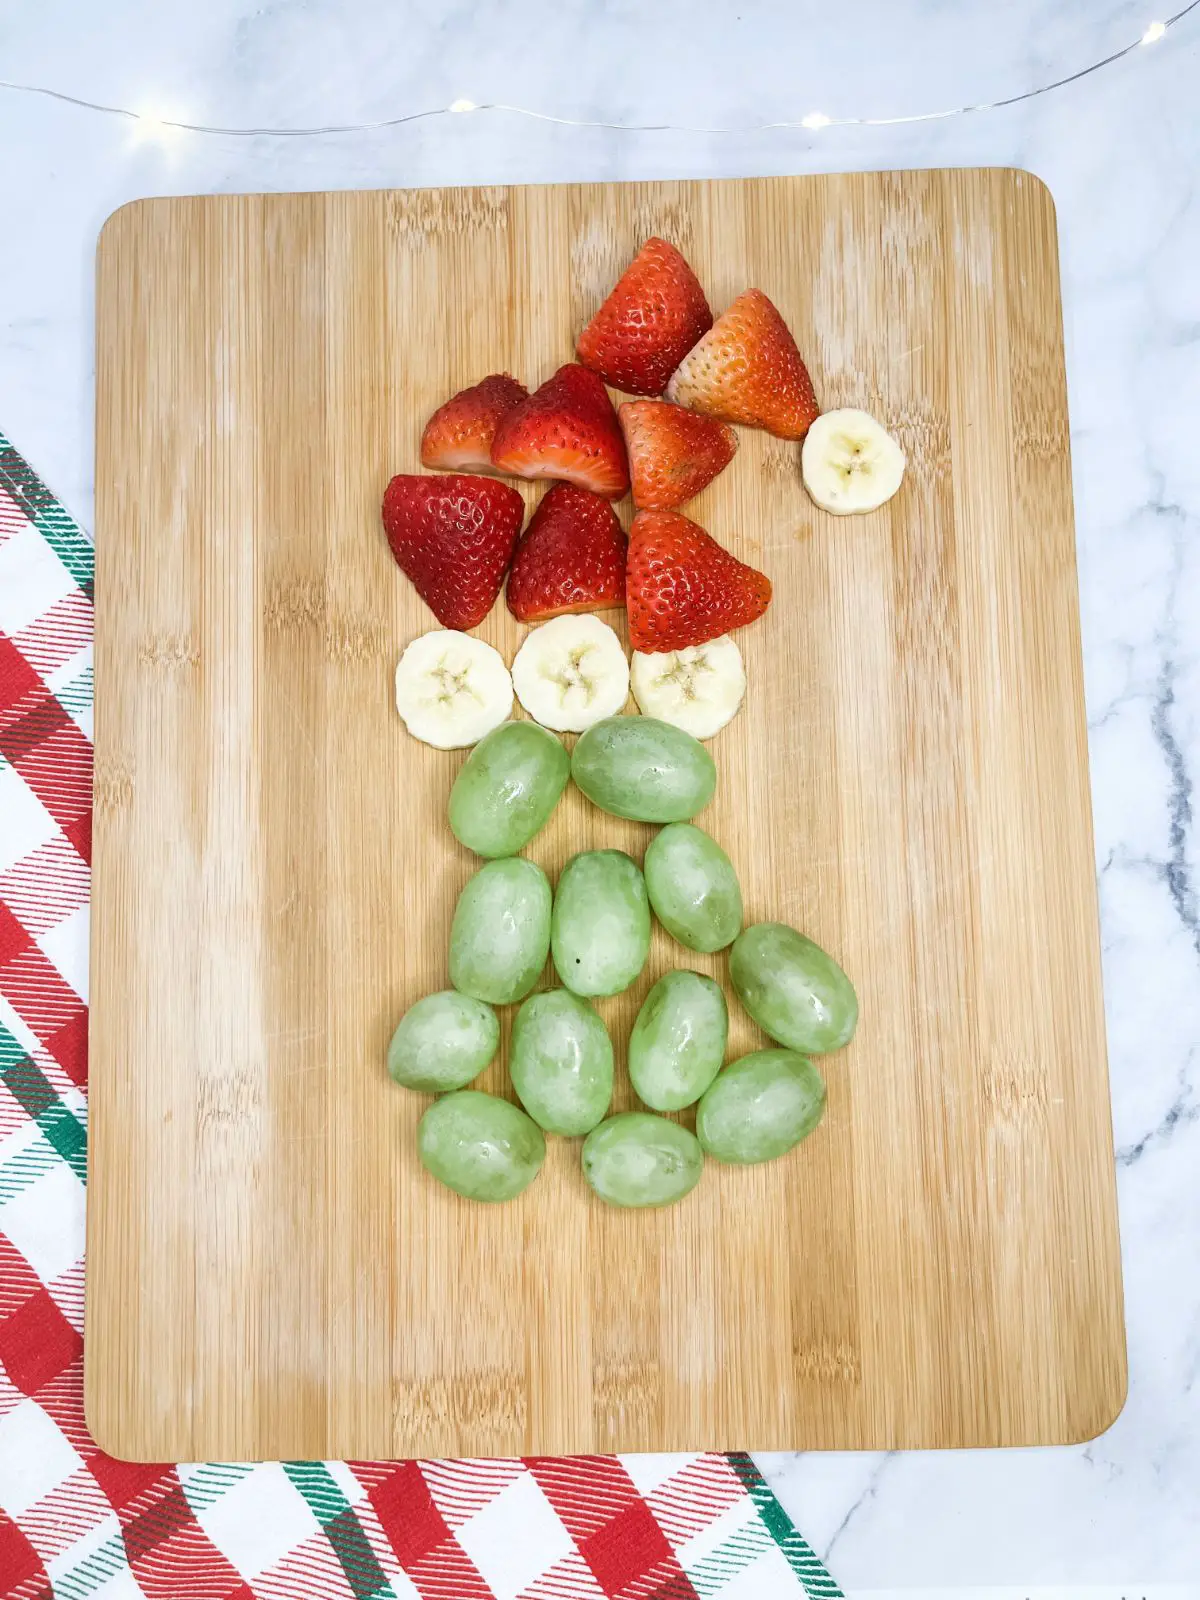 grinch fruit board